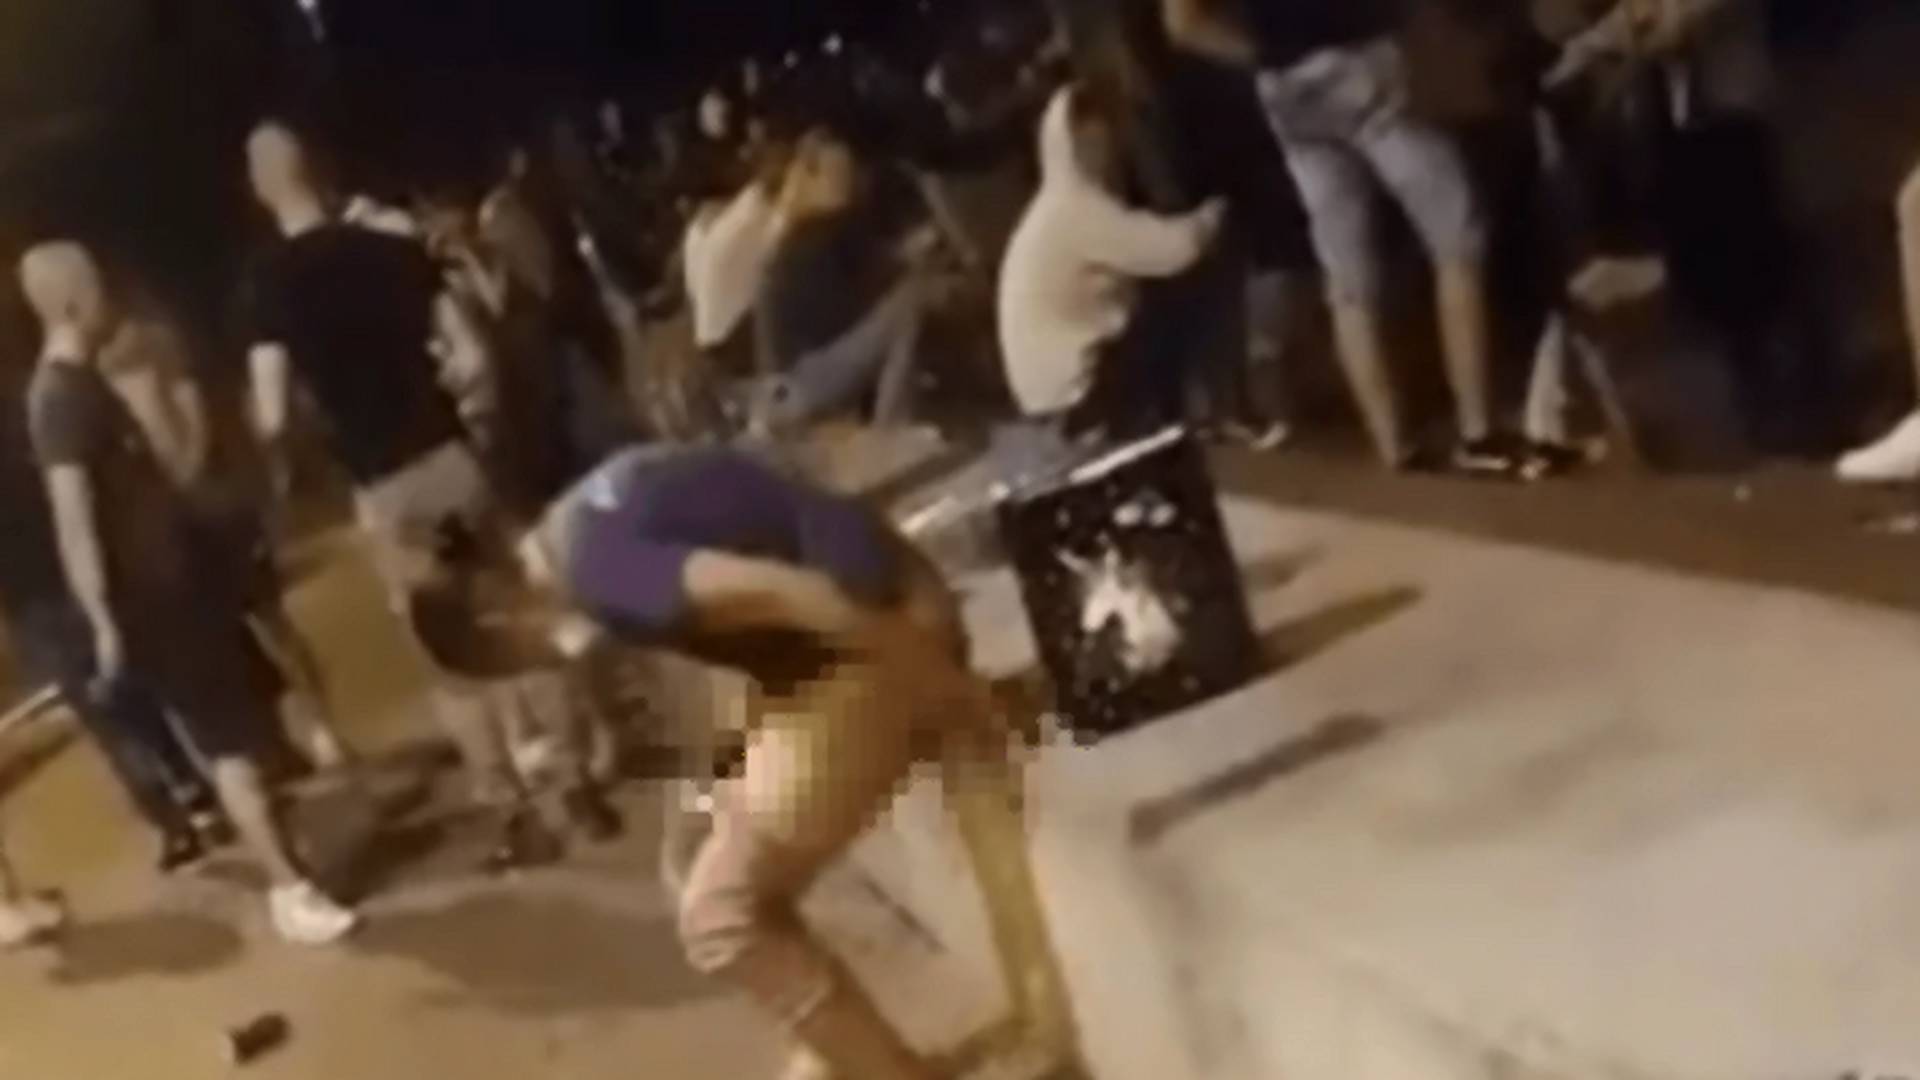 Snimak devojke koja pijana urinira nasred novosadskog Keja je toliko tužan iz mnogo razloga